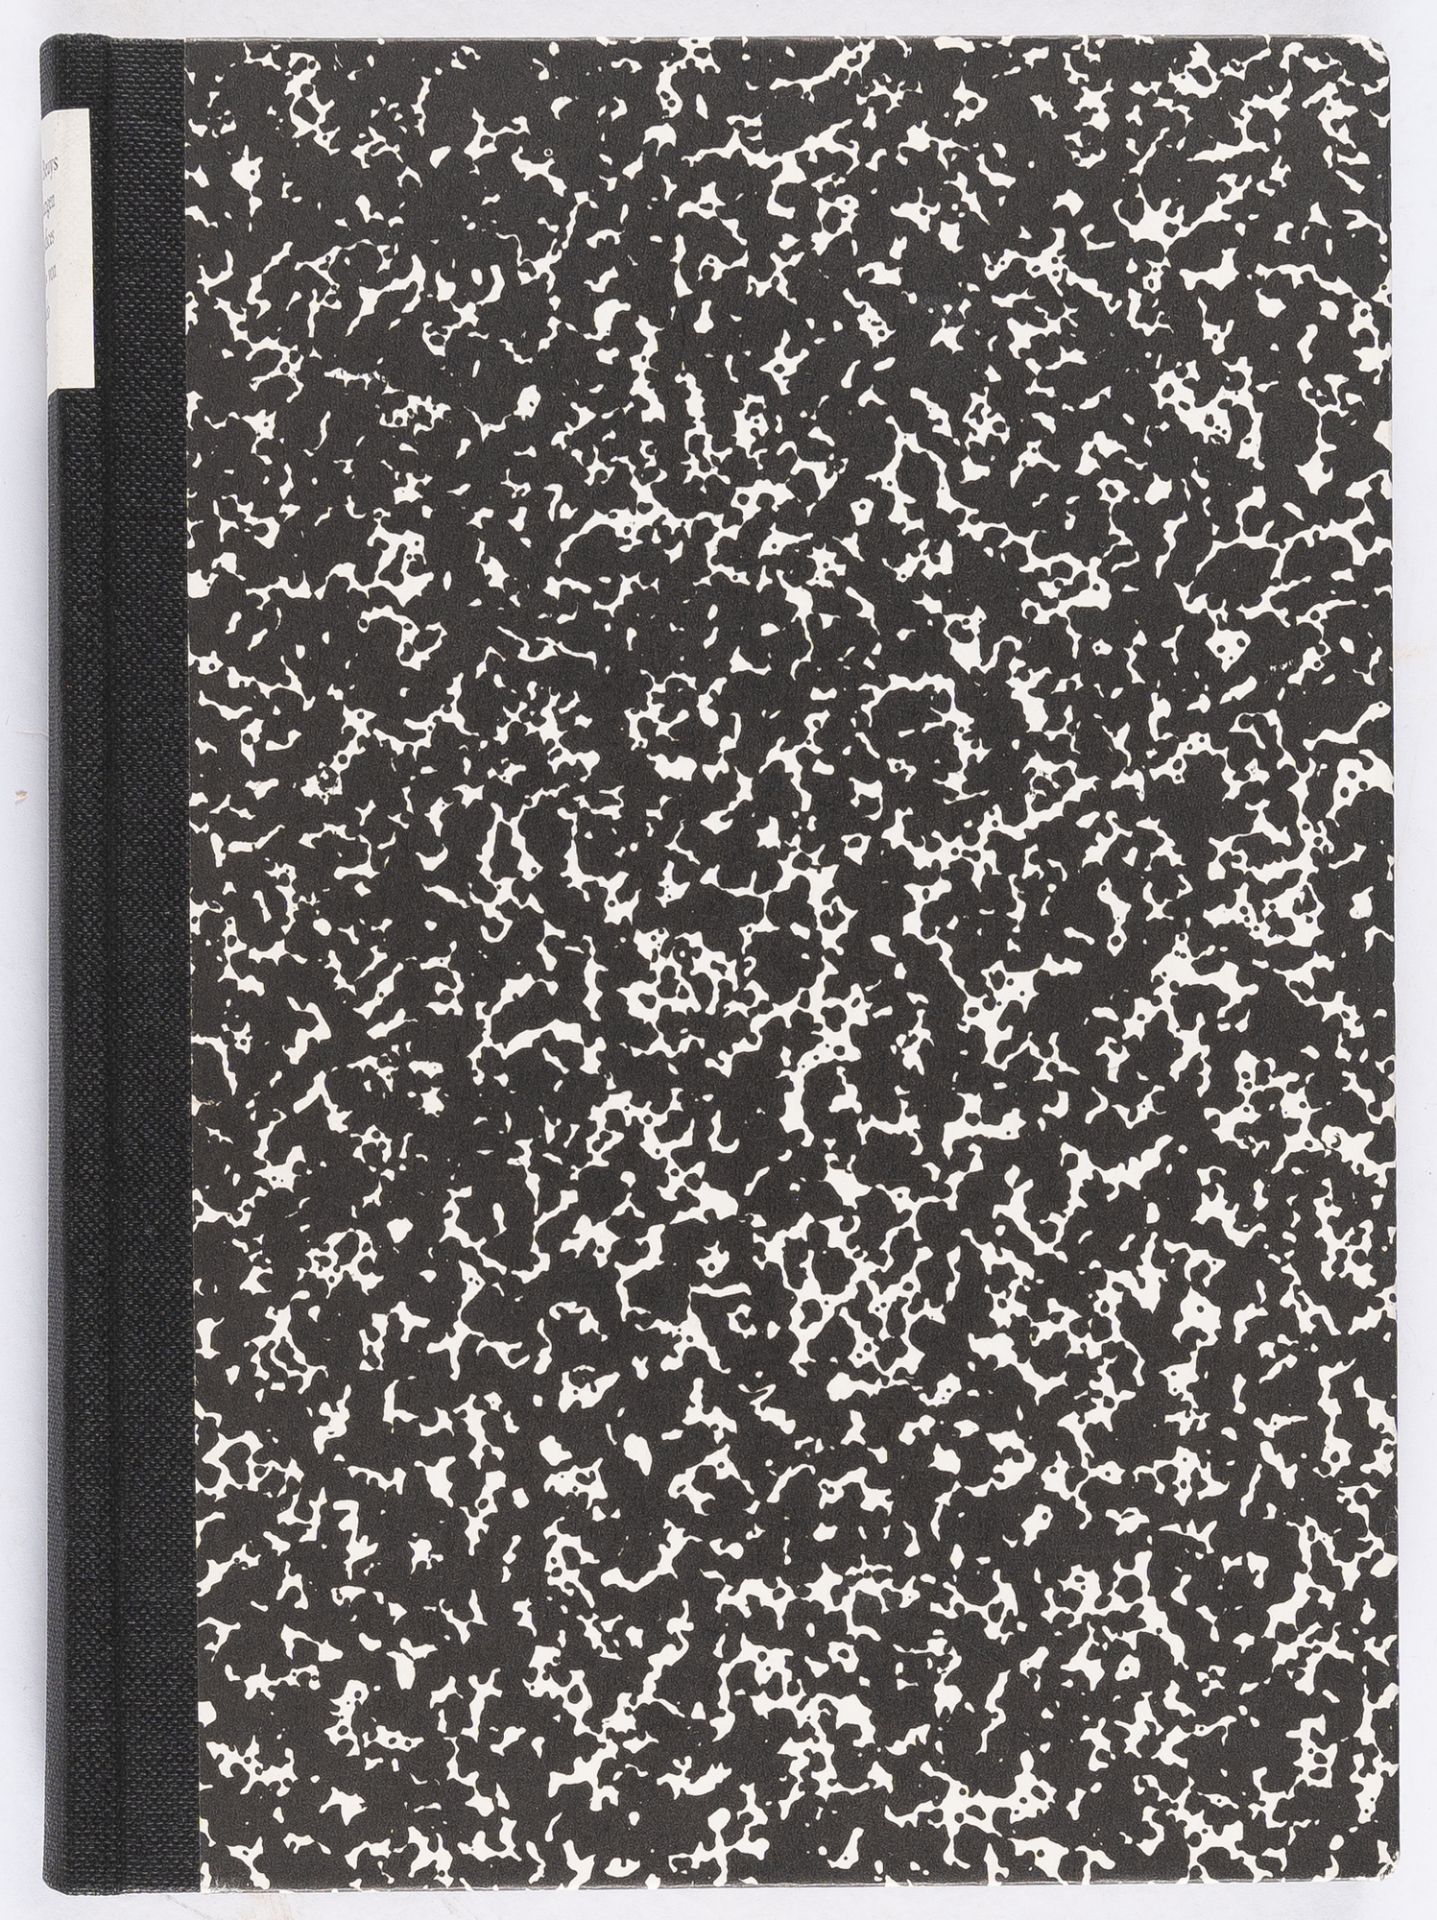 Joseph Beuys – Zeichnungen zu Leonardos Codices Madrid - Image 5 of 5